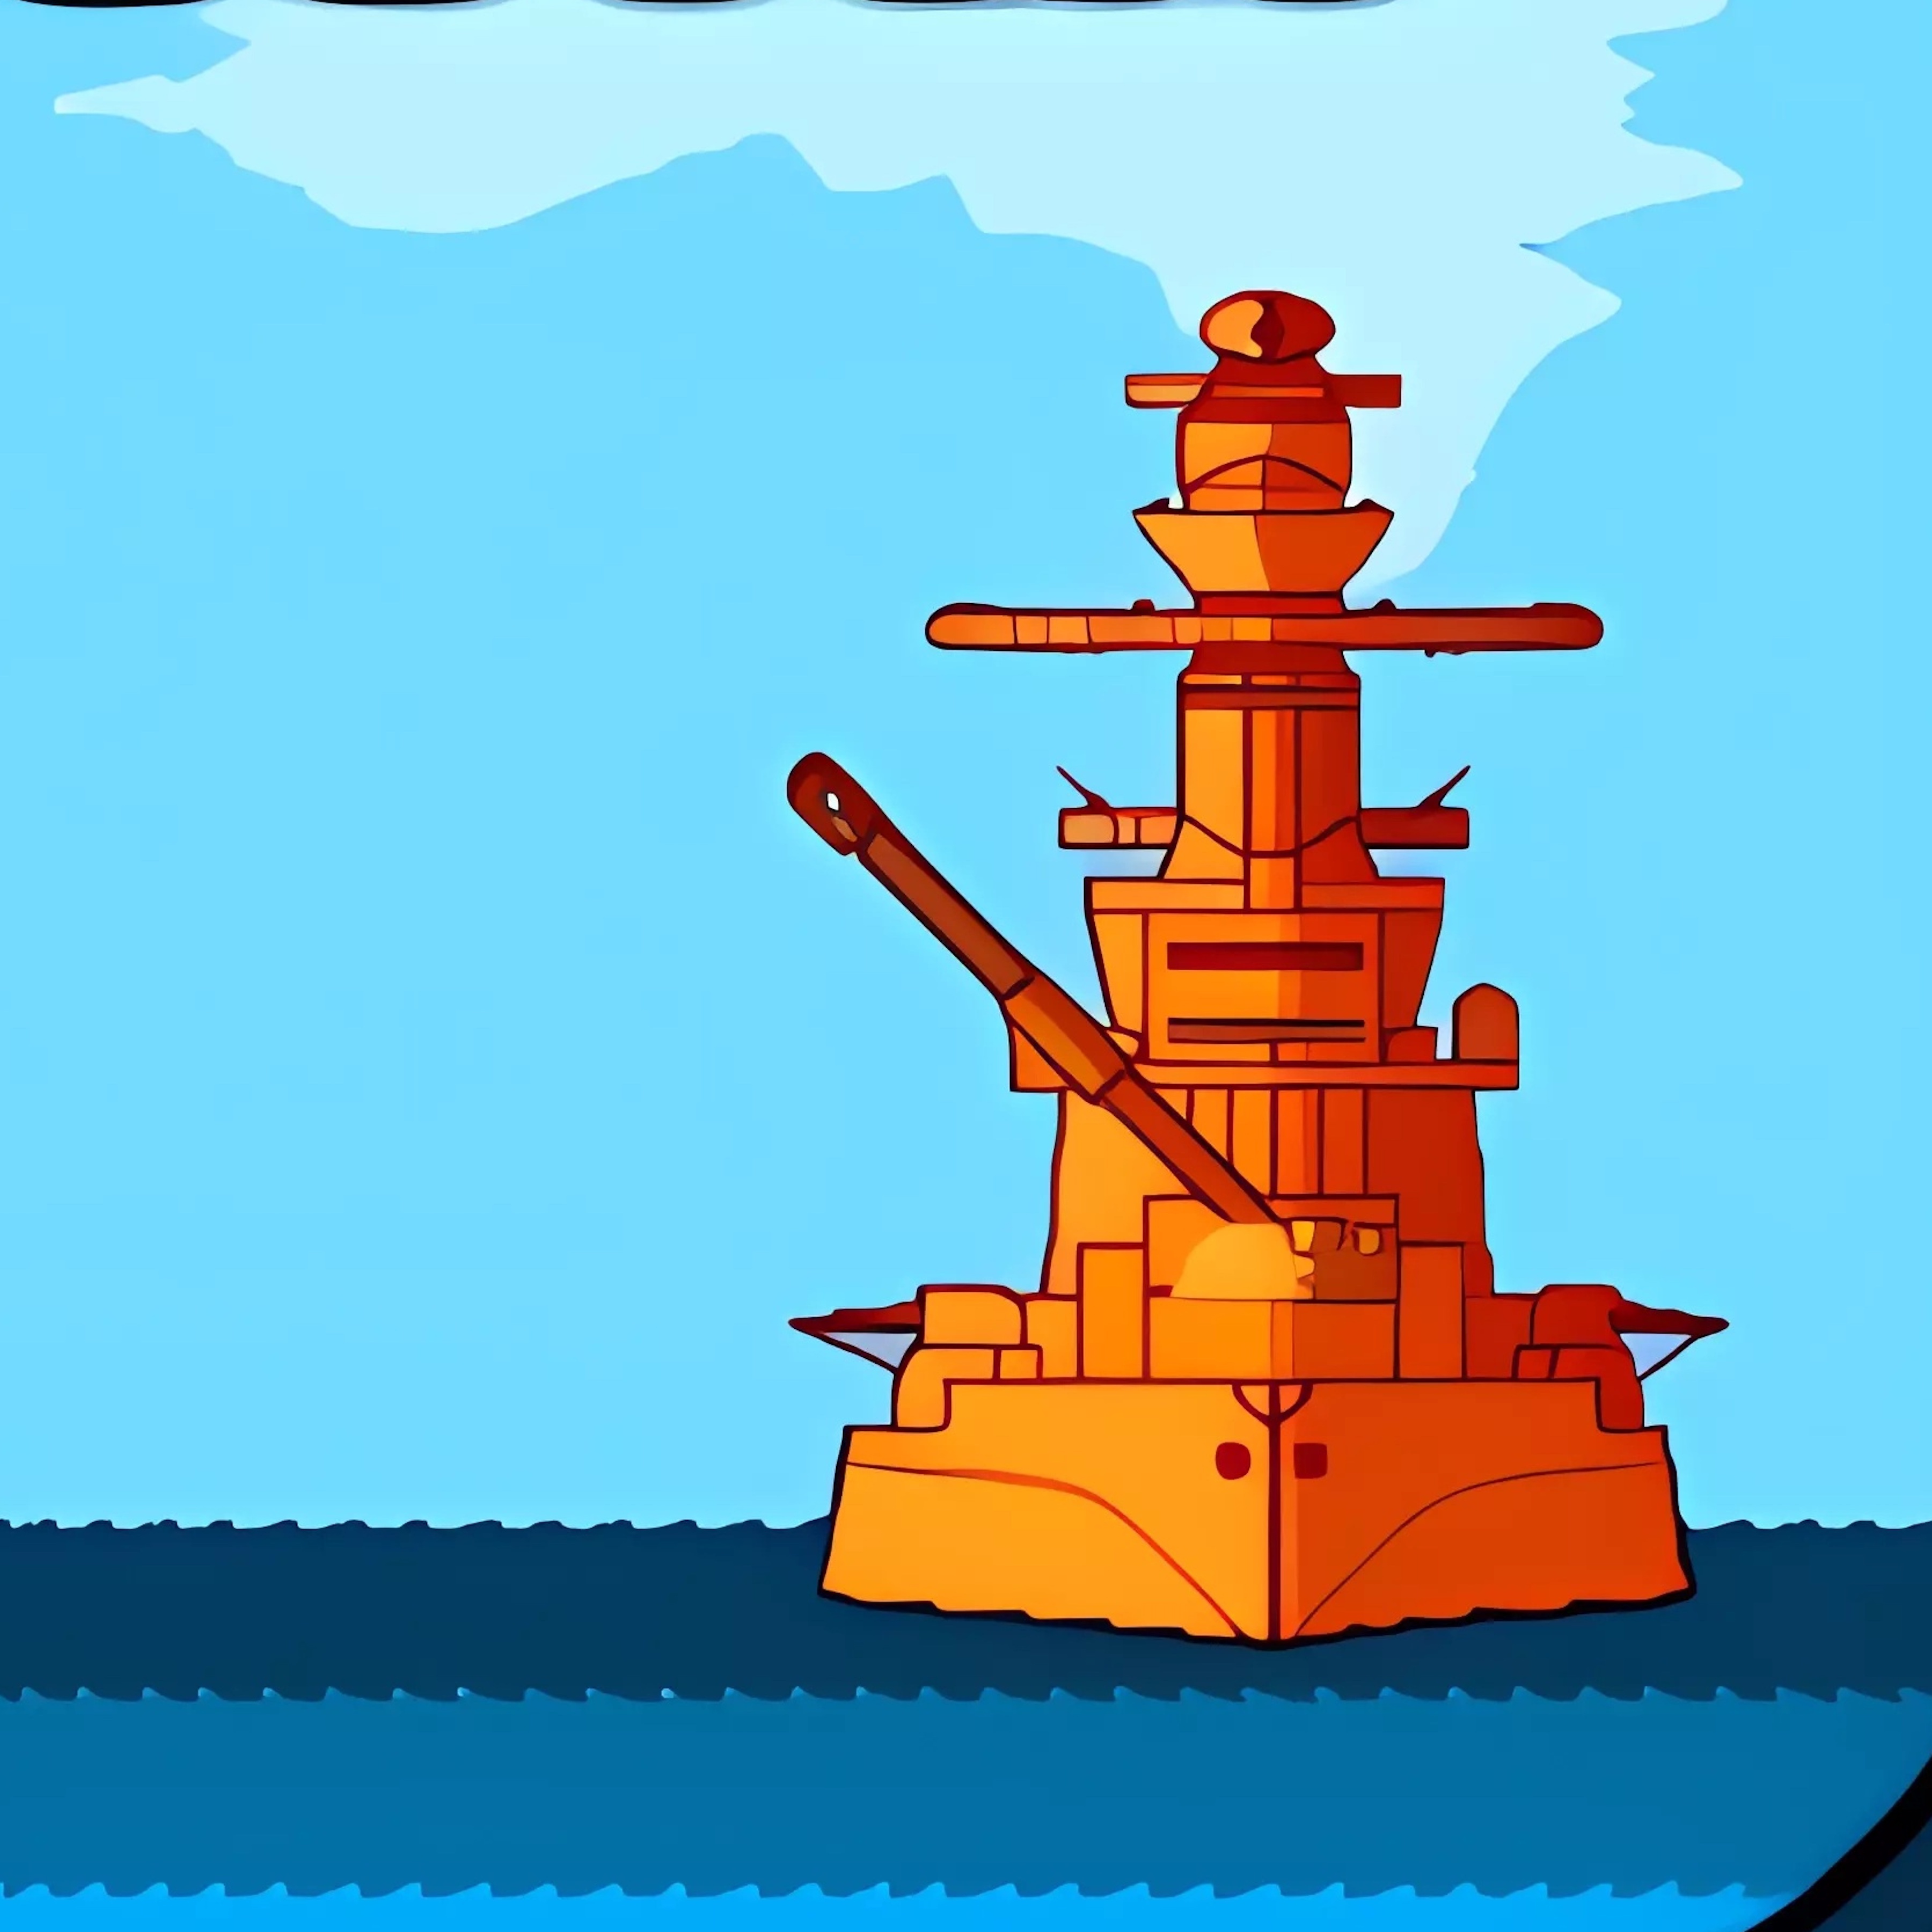 Turn Based Ship War